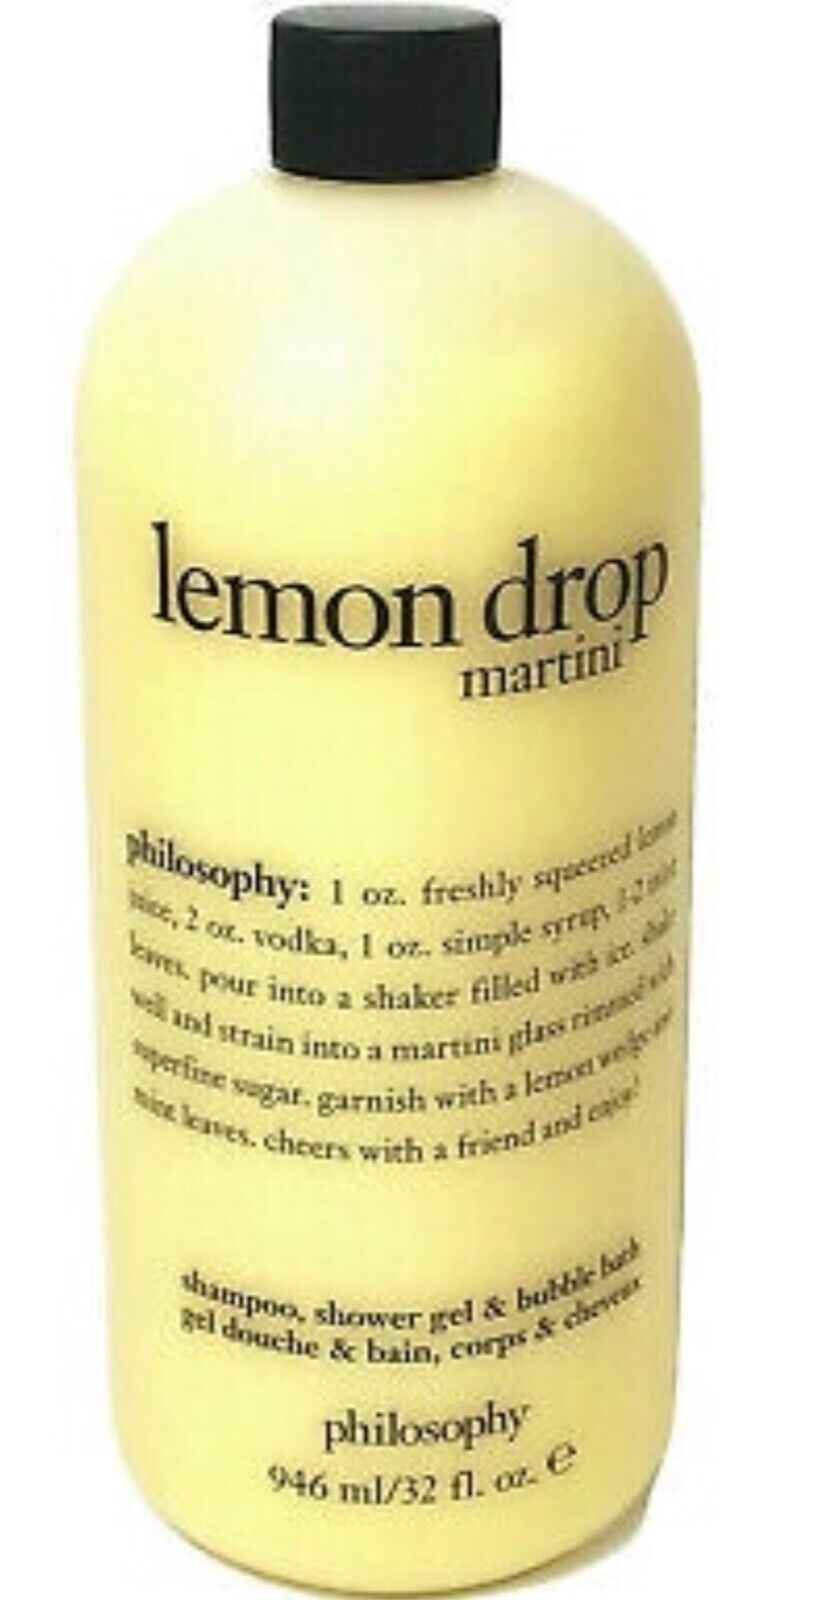 Philosophy Lemon Drop Martini Shower Gel Huge 32 oz. Brand New & Sealed NO PUMP - $48.00